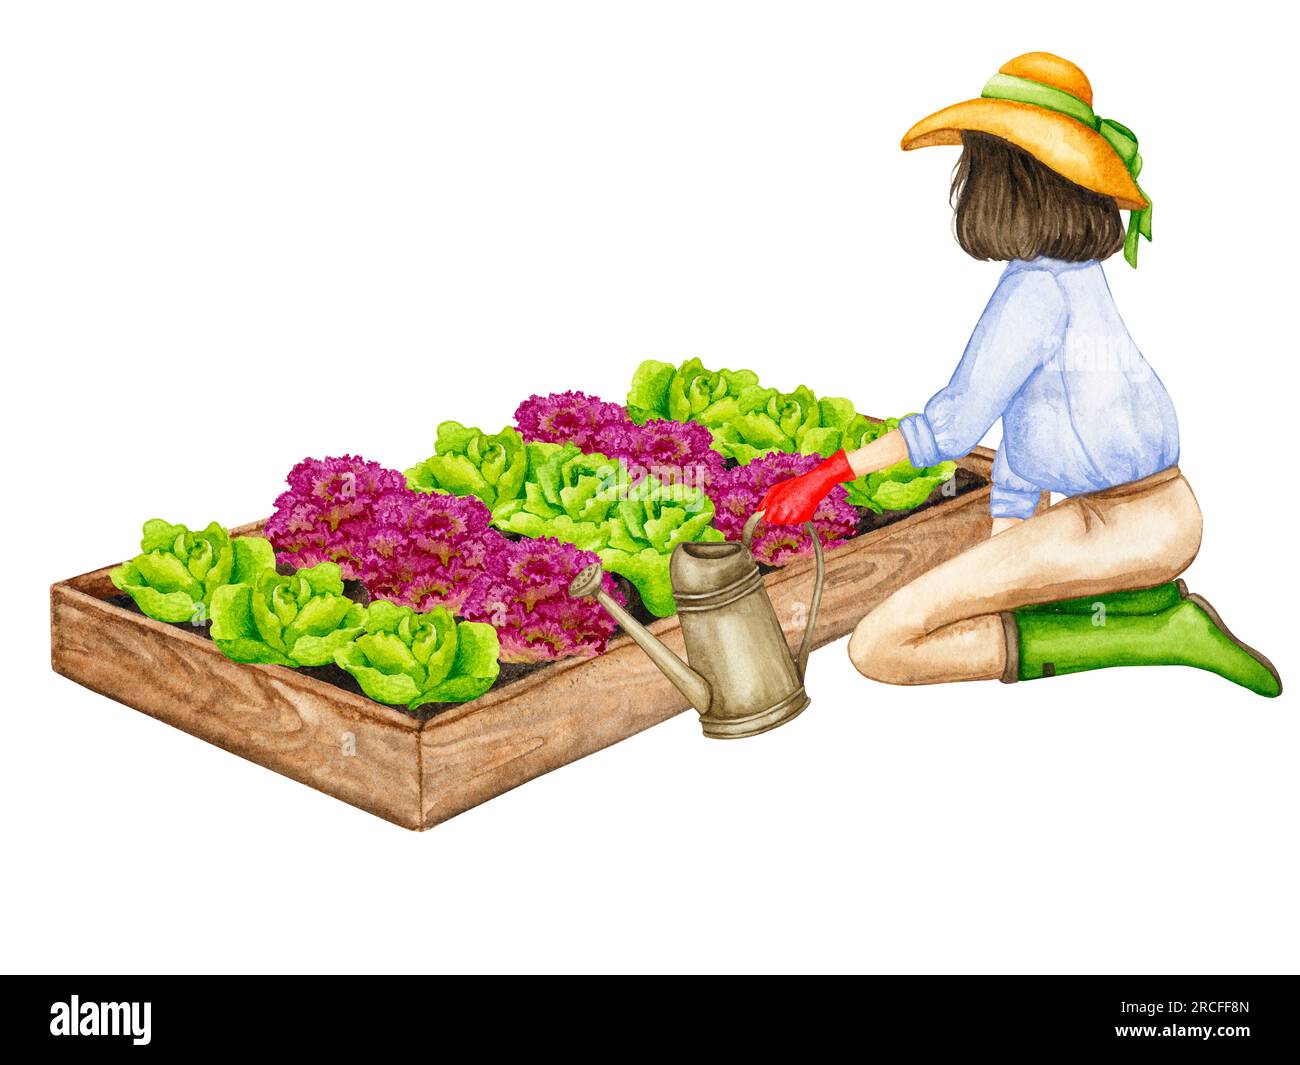 Una donna annaffia un letto da giardino con lattughe che crescono da una lattina d'acqua. Composizione sul tema del giardinaggio, delle piantine primaverili, della coltivazione delle verdure. Foto Stock